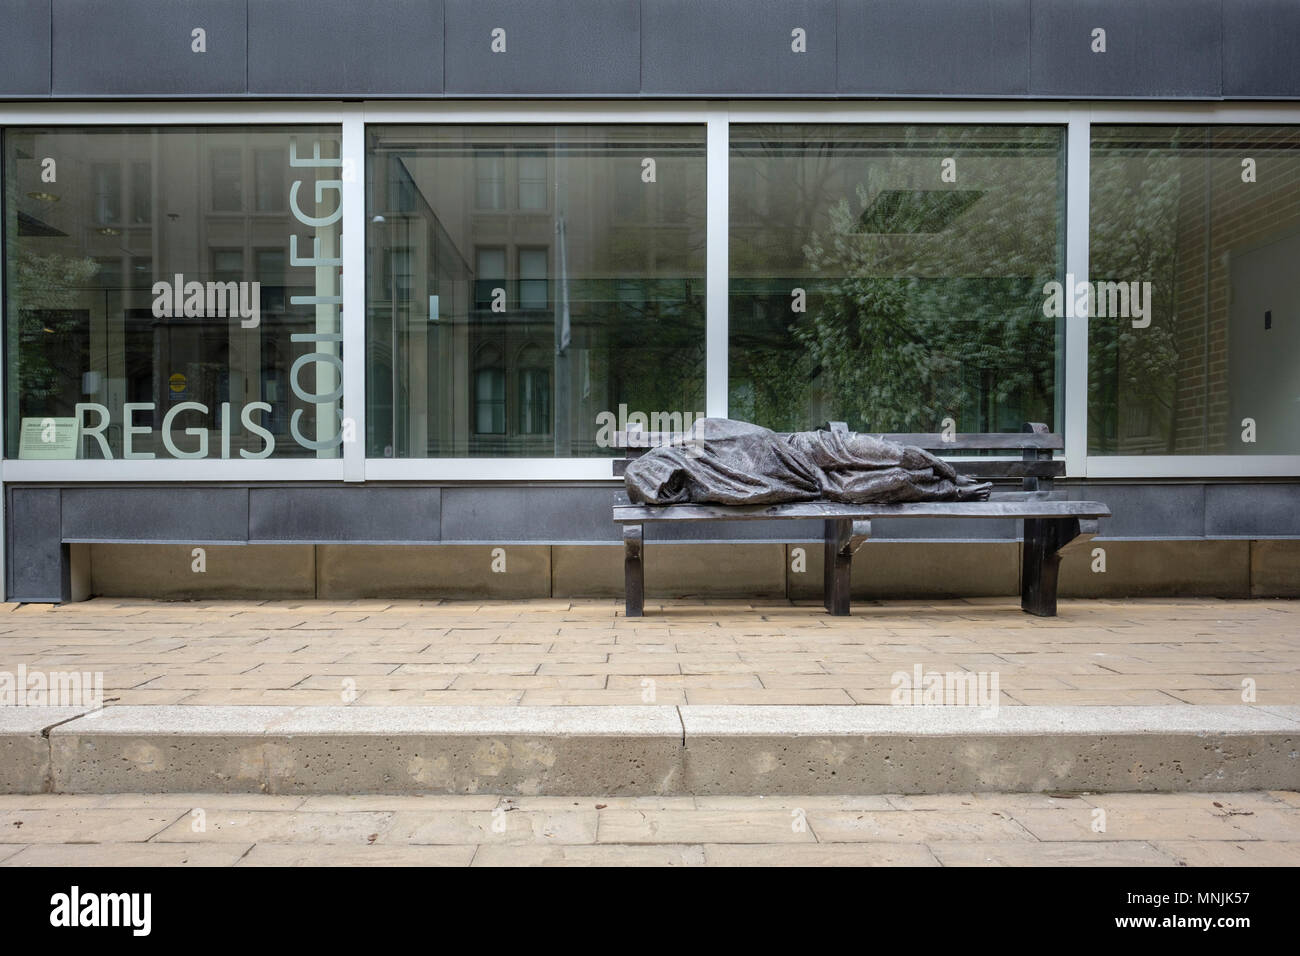 Jésus, sans-abri ou sans-abri, la statue de Jésus par l'artiste canadien Timothy Schmaltz, Regis College, Université de Toronto, Ontario, Canada Banque D'Images